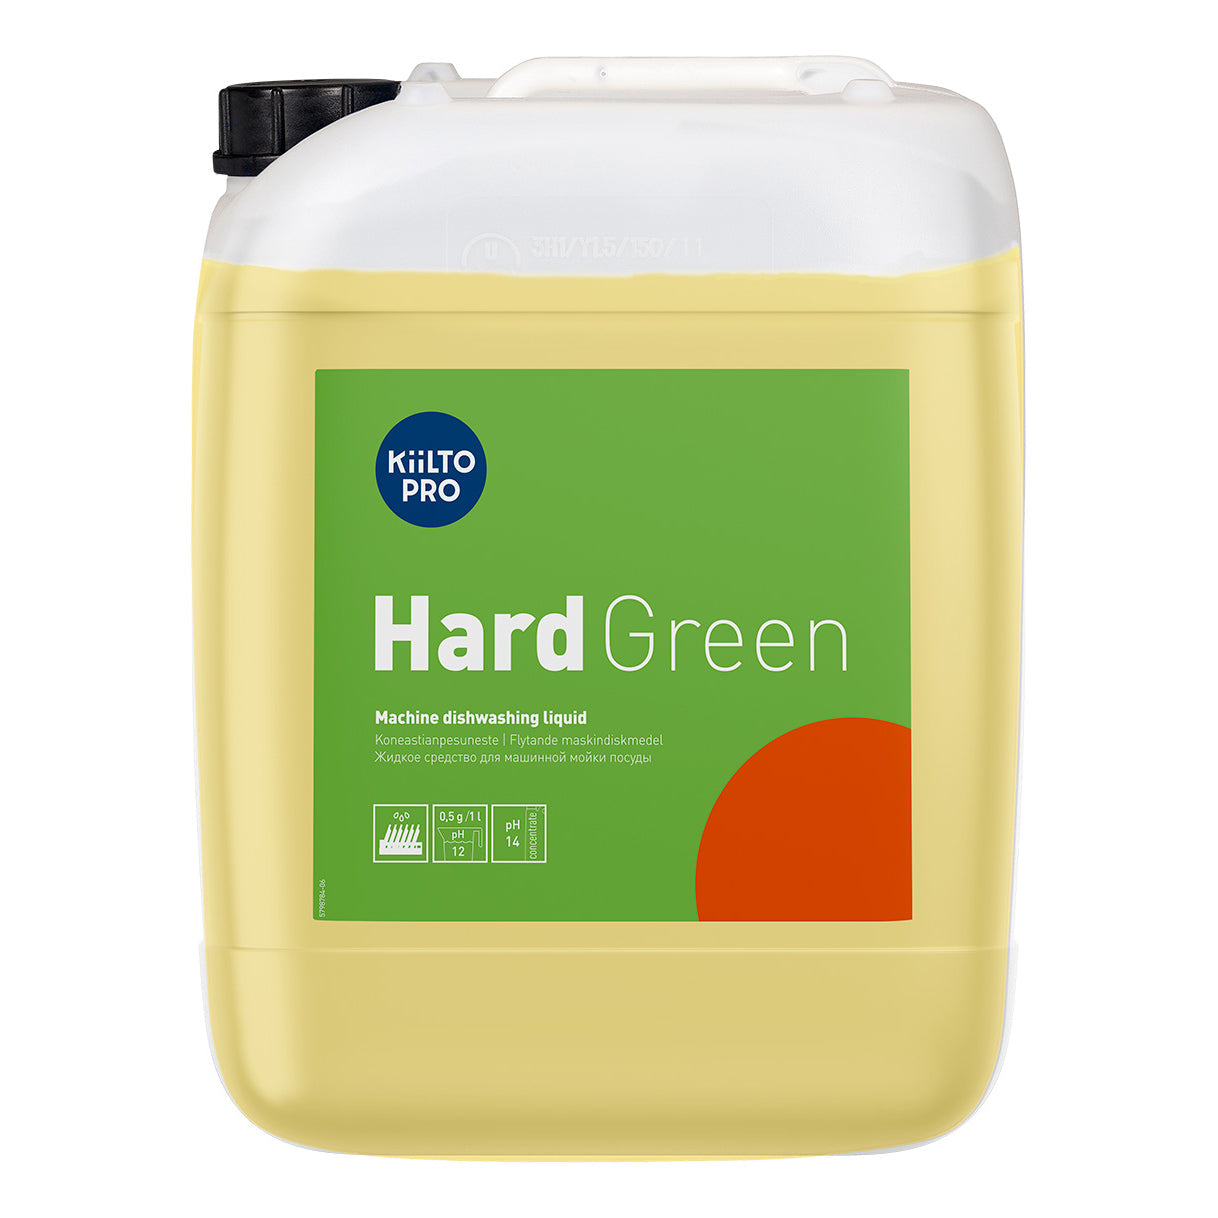 KIILTO Pro Hard Green Maskinopvask, 20 ltr